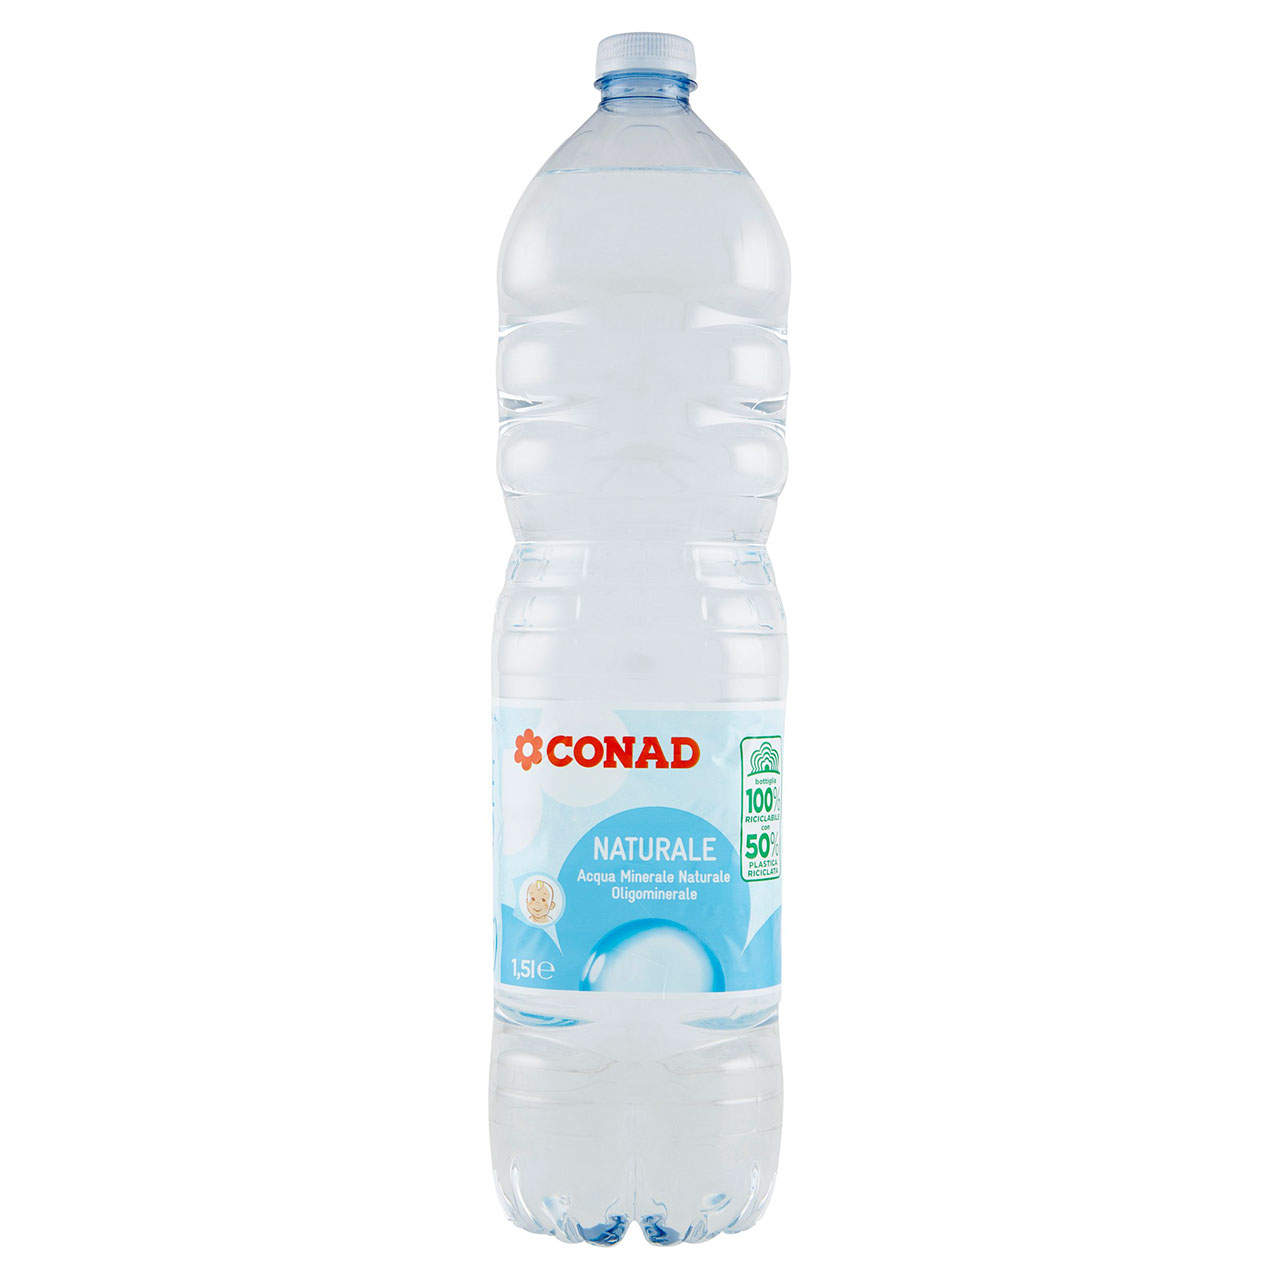 Acqua minerale naturale 1.5 l Conad